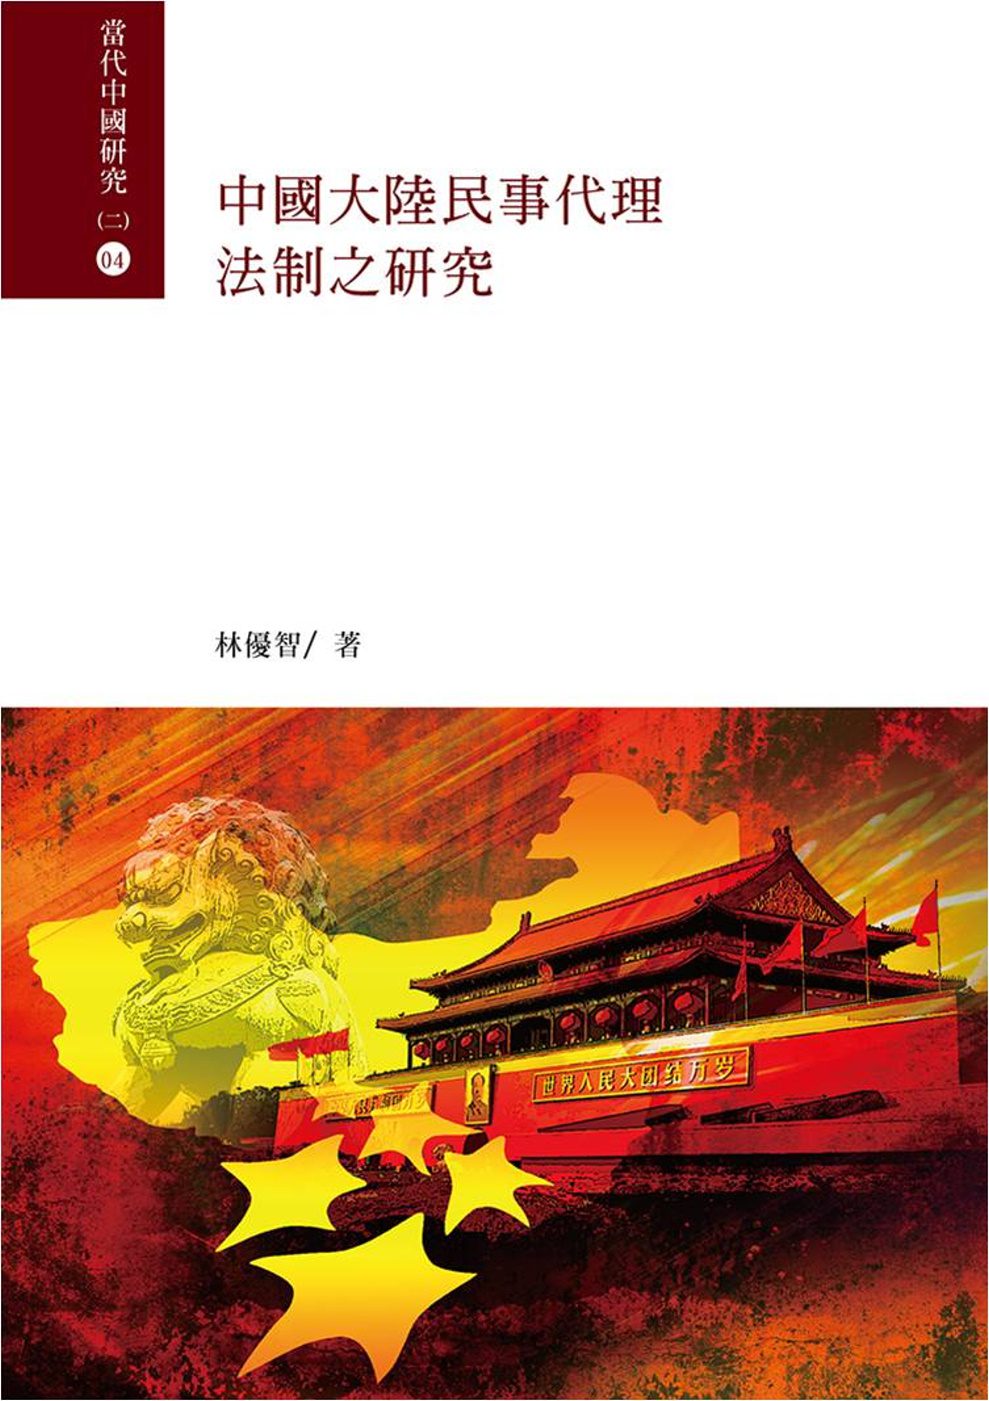 中國大陸民事代理法制之研究